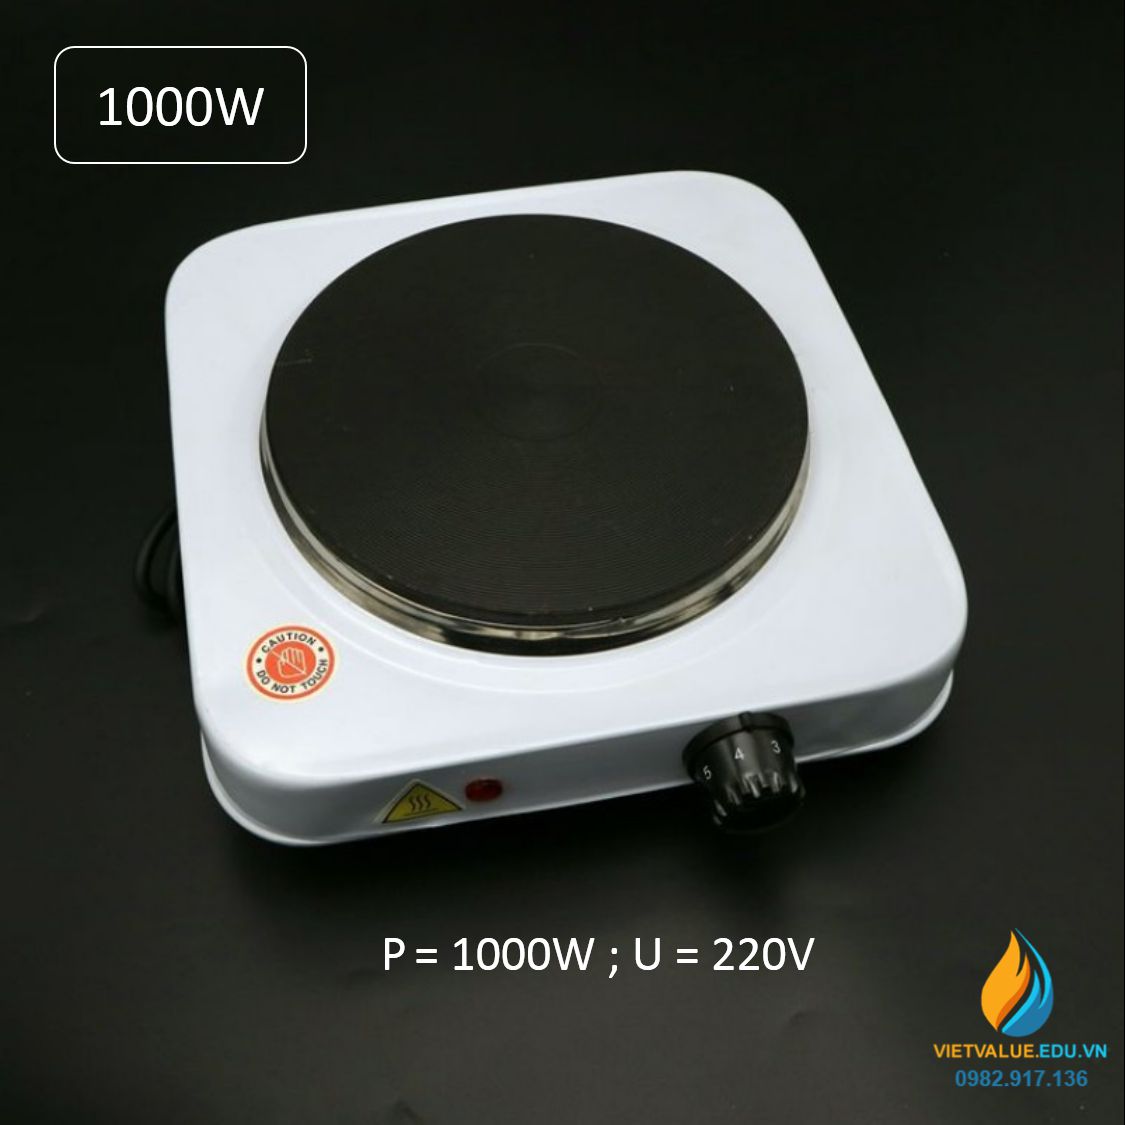 Bếp điện nung mẫu công suất 1000W, mặt bếp gia nhiệt 16cm, điện áp sử dụng 220V